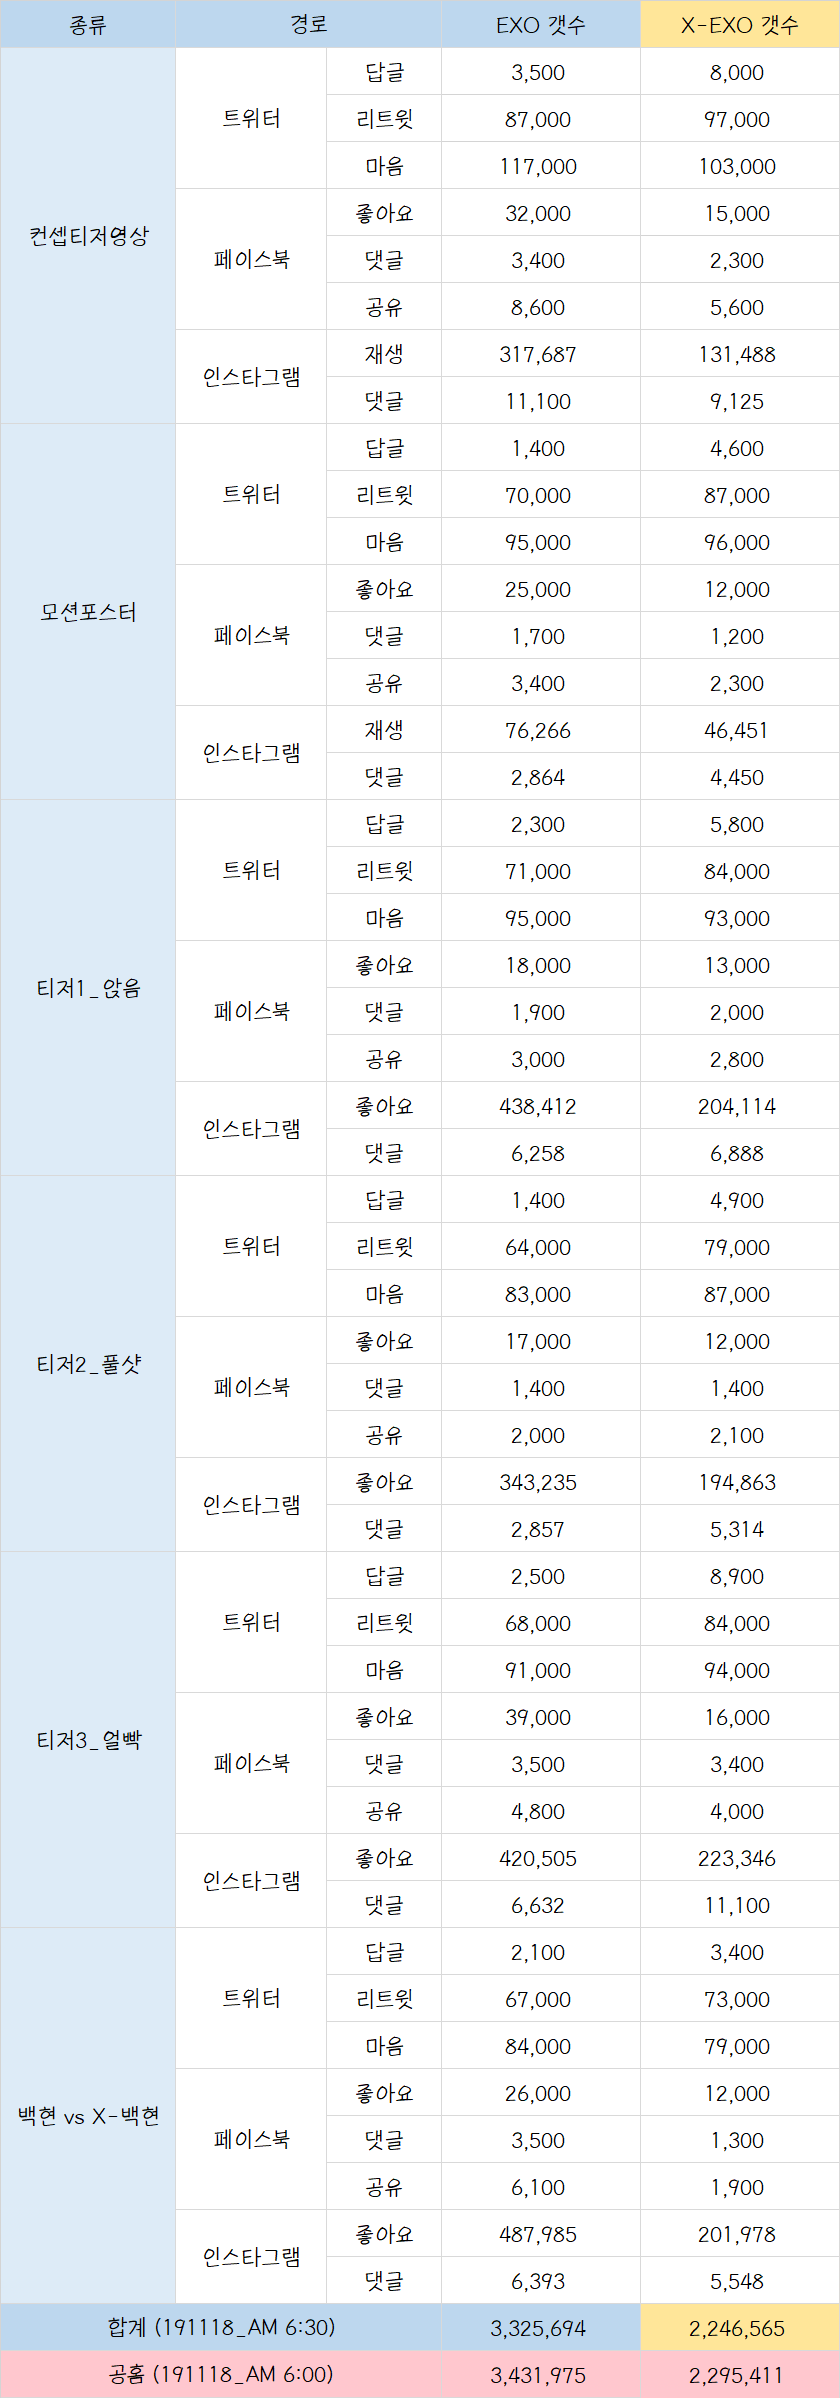 EXO VS X-EXO 백현이 오전 6시 수치 비교표 | 인스티즈